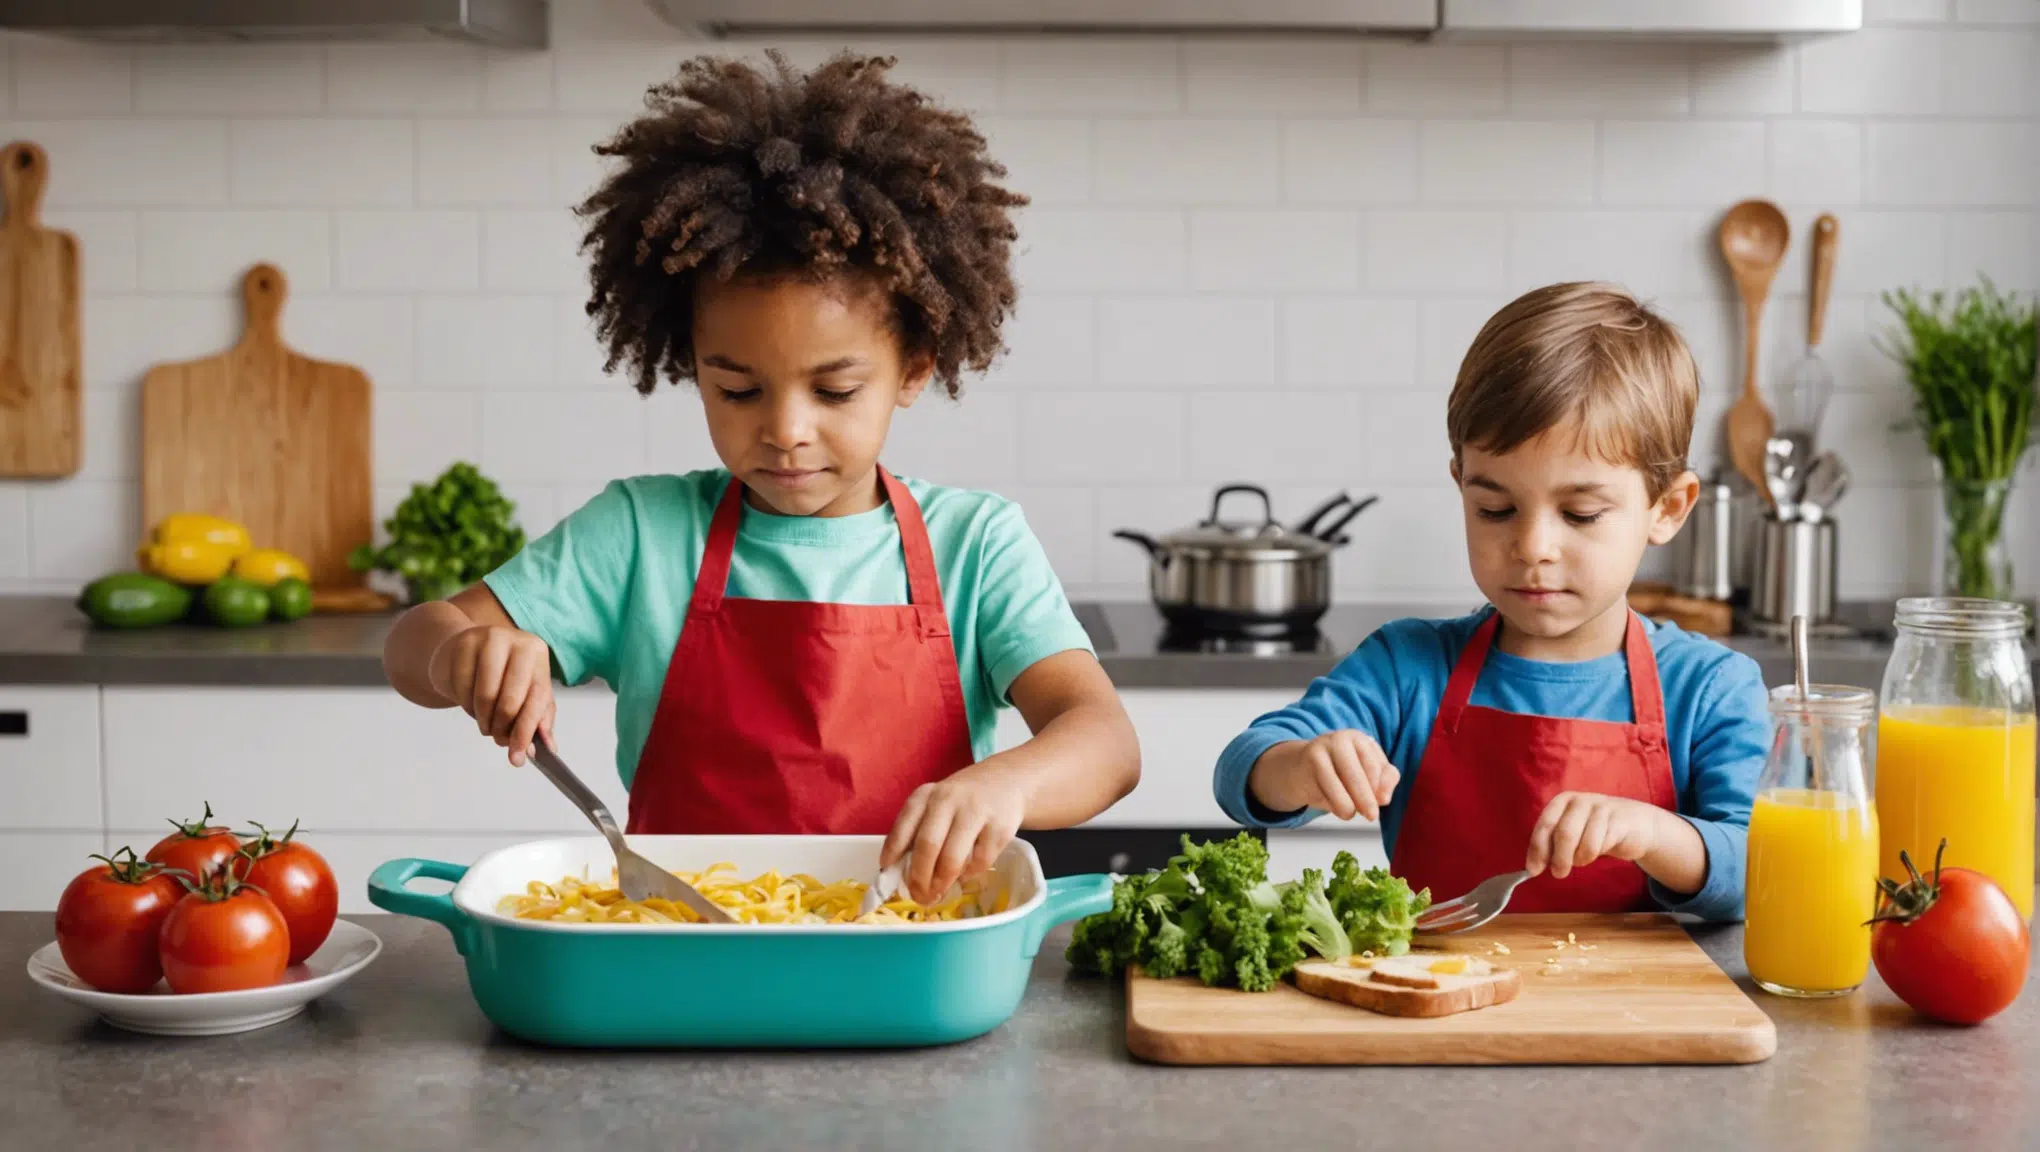 découvrez des astuces amusantes pour rendre la cuisine attrayante pour les enfants avec nos conseils pratiques et ludiques.